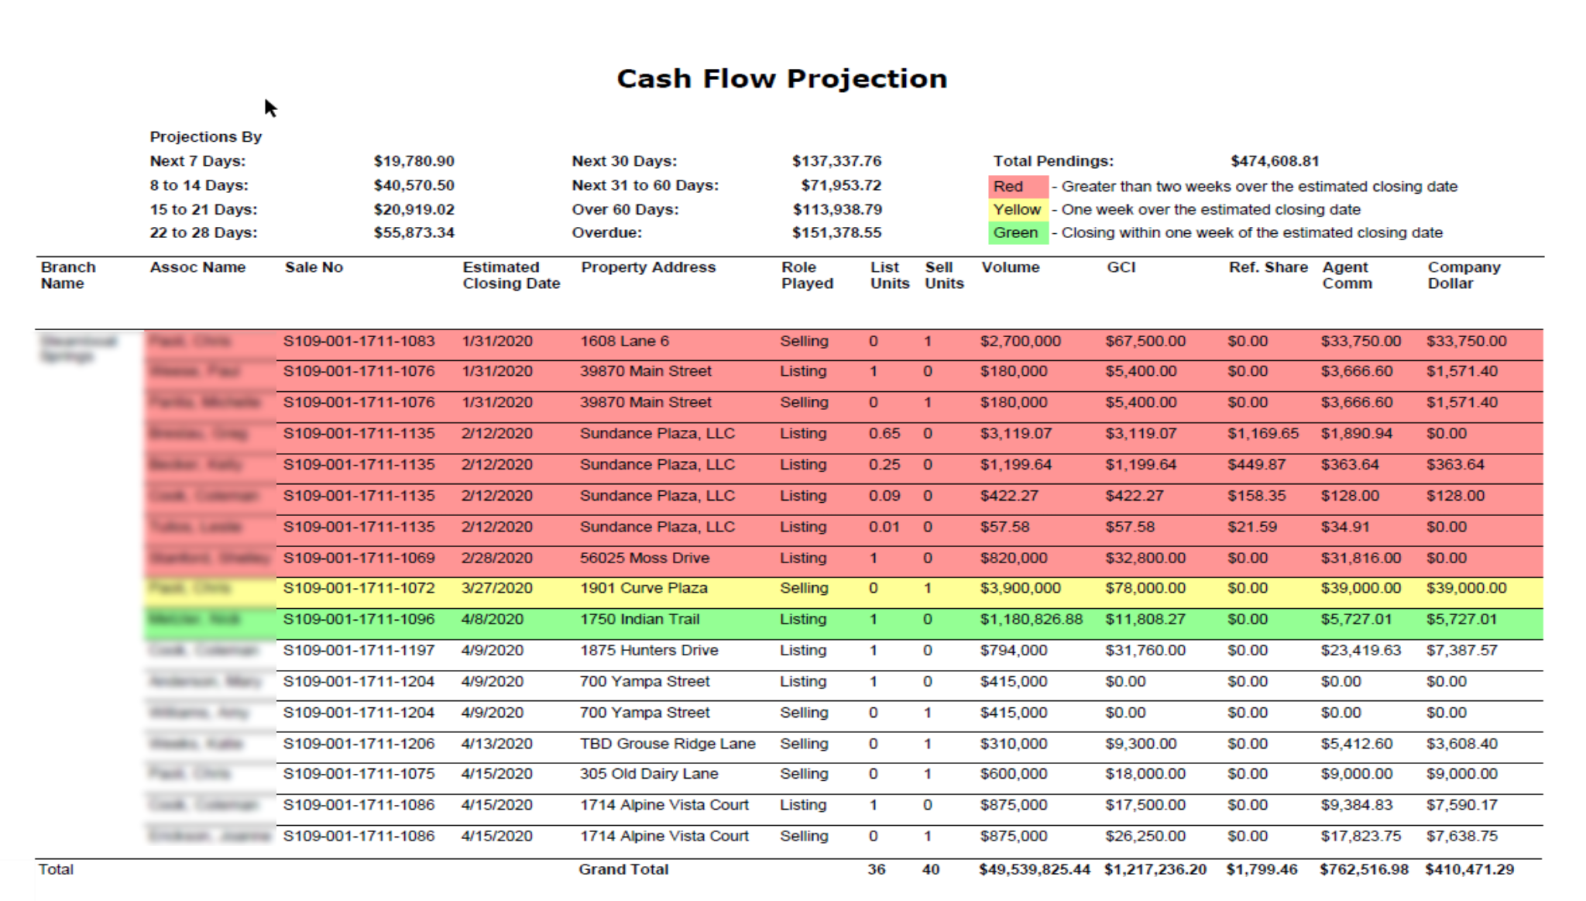 Cash flow projection report